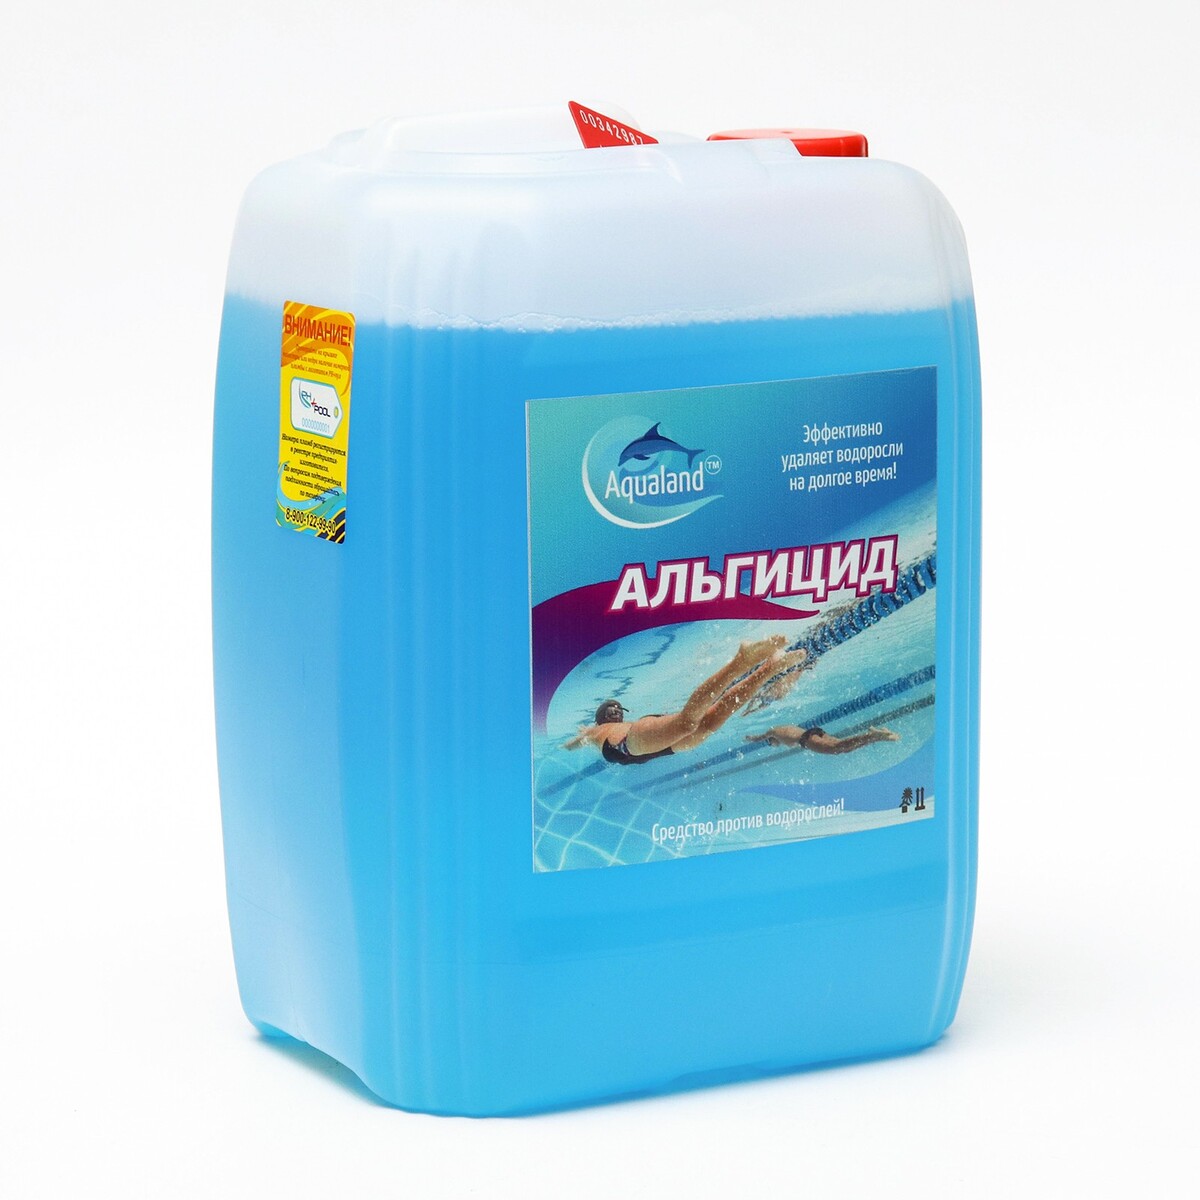 Средство против водорослей aqualand, альгицид, 5 л bayrol быстрорастворимый хлор для ударной дезинфекции воды chlorifix 1 кг